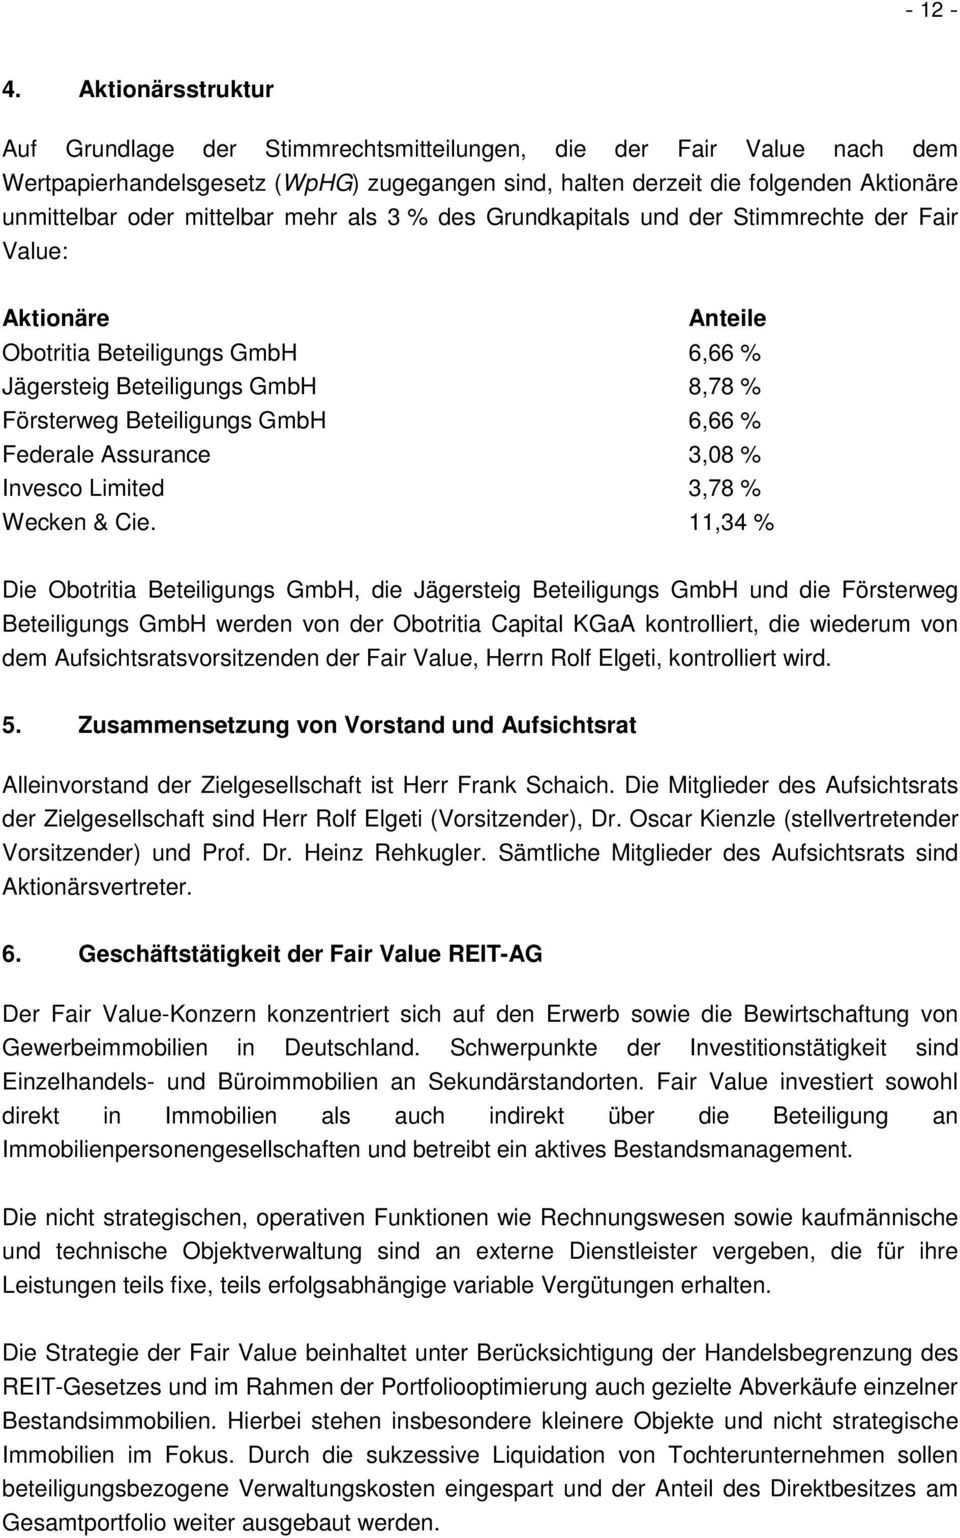 mittelbar mehr als 3 % des Grundkapitals und der Stimmrechte der Fair Value: Aktionäre Anteile Obotritia Beteiligungs GmbH 6,66 % Jägersteig Beteiligungs GmbH 8,78 % Försterweg Beteiligungs GmbH 6,66